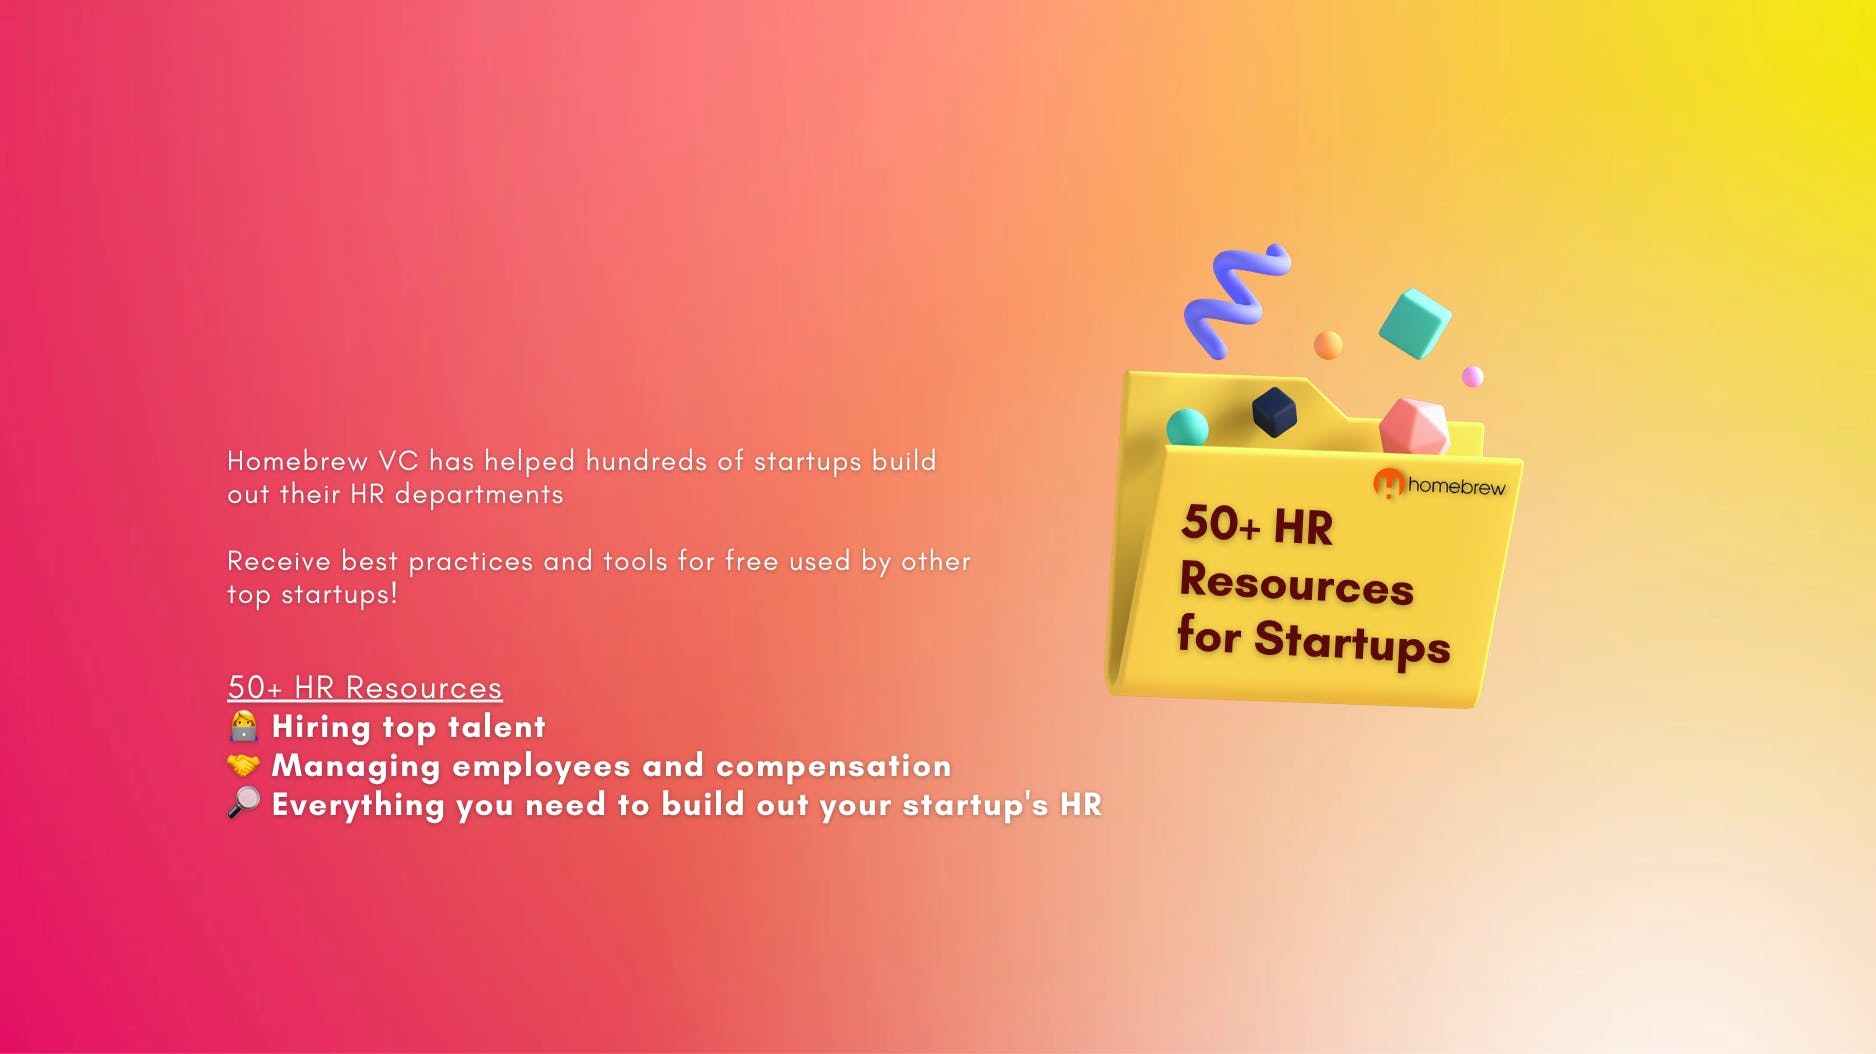 Homebrew’s 50+ HR Resources for Startups media 1